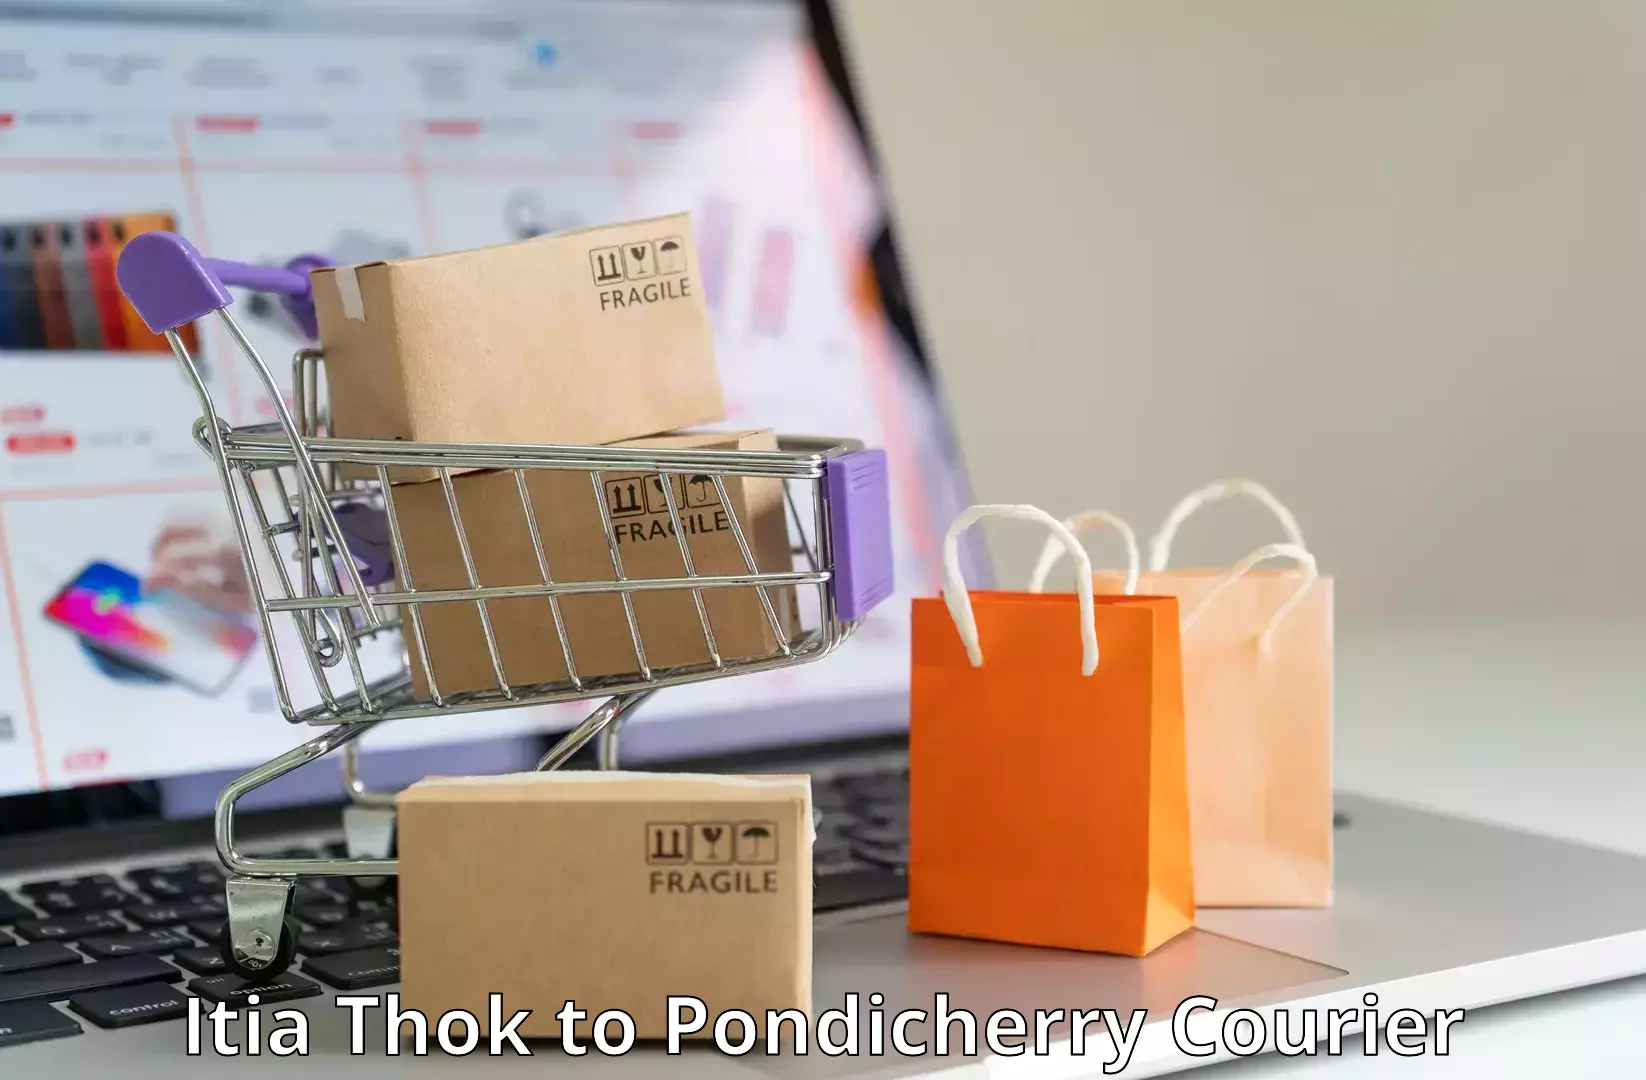 On-demand courier Itia Thok to Pondicherry University